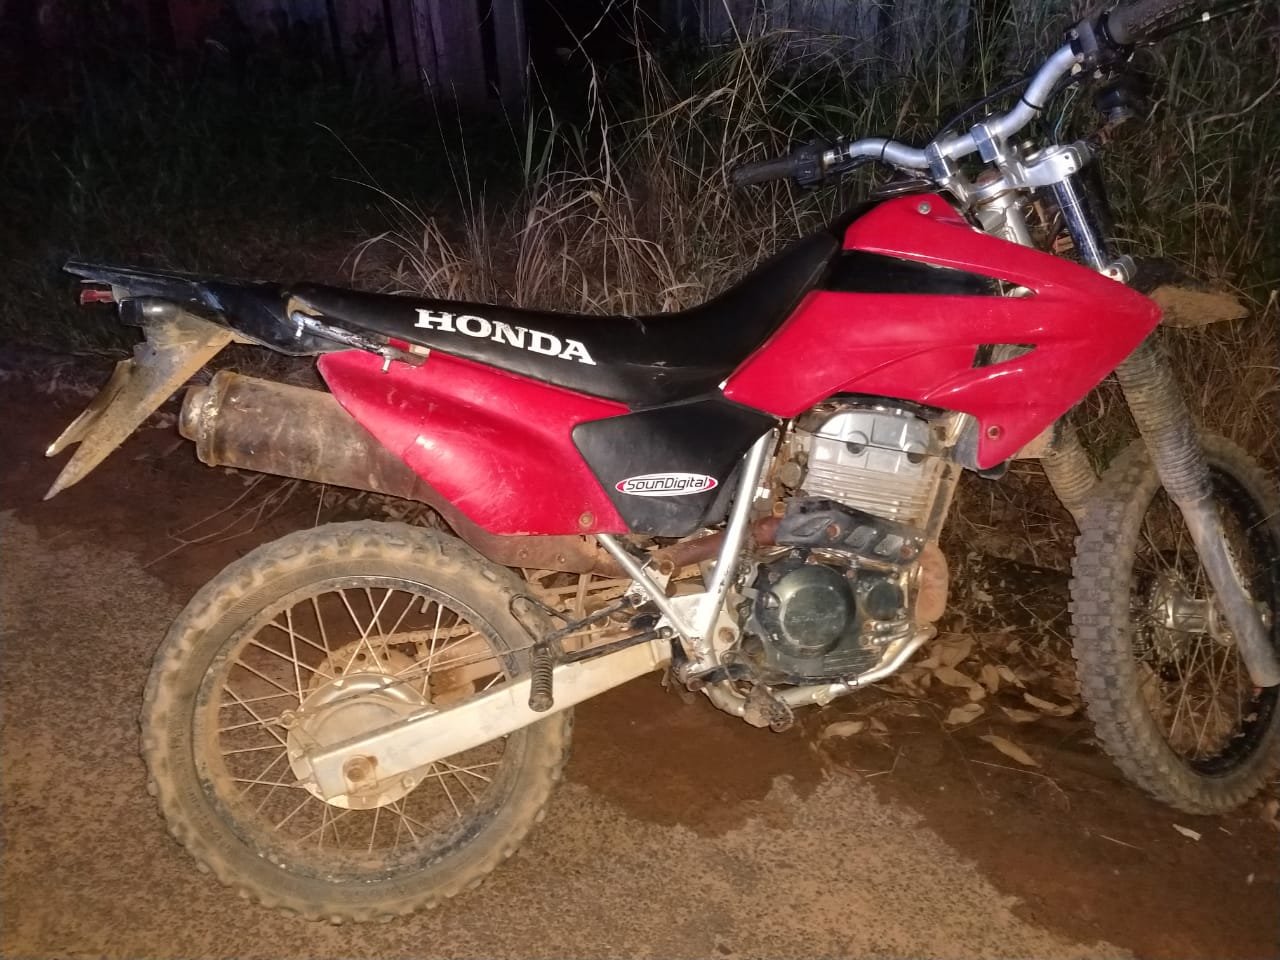 Policia Militar de Colniza recupera duas motocicletas furtadas nesta semana 